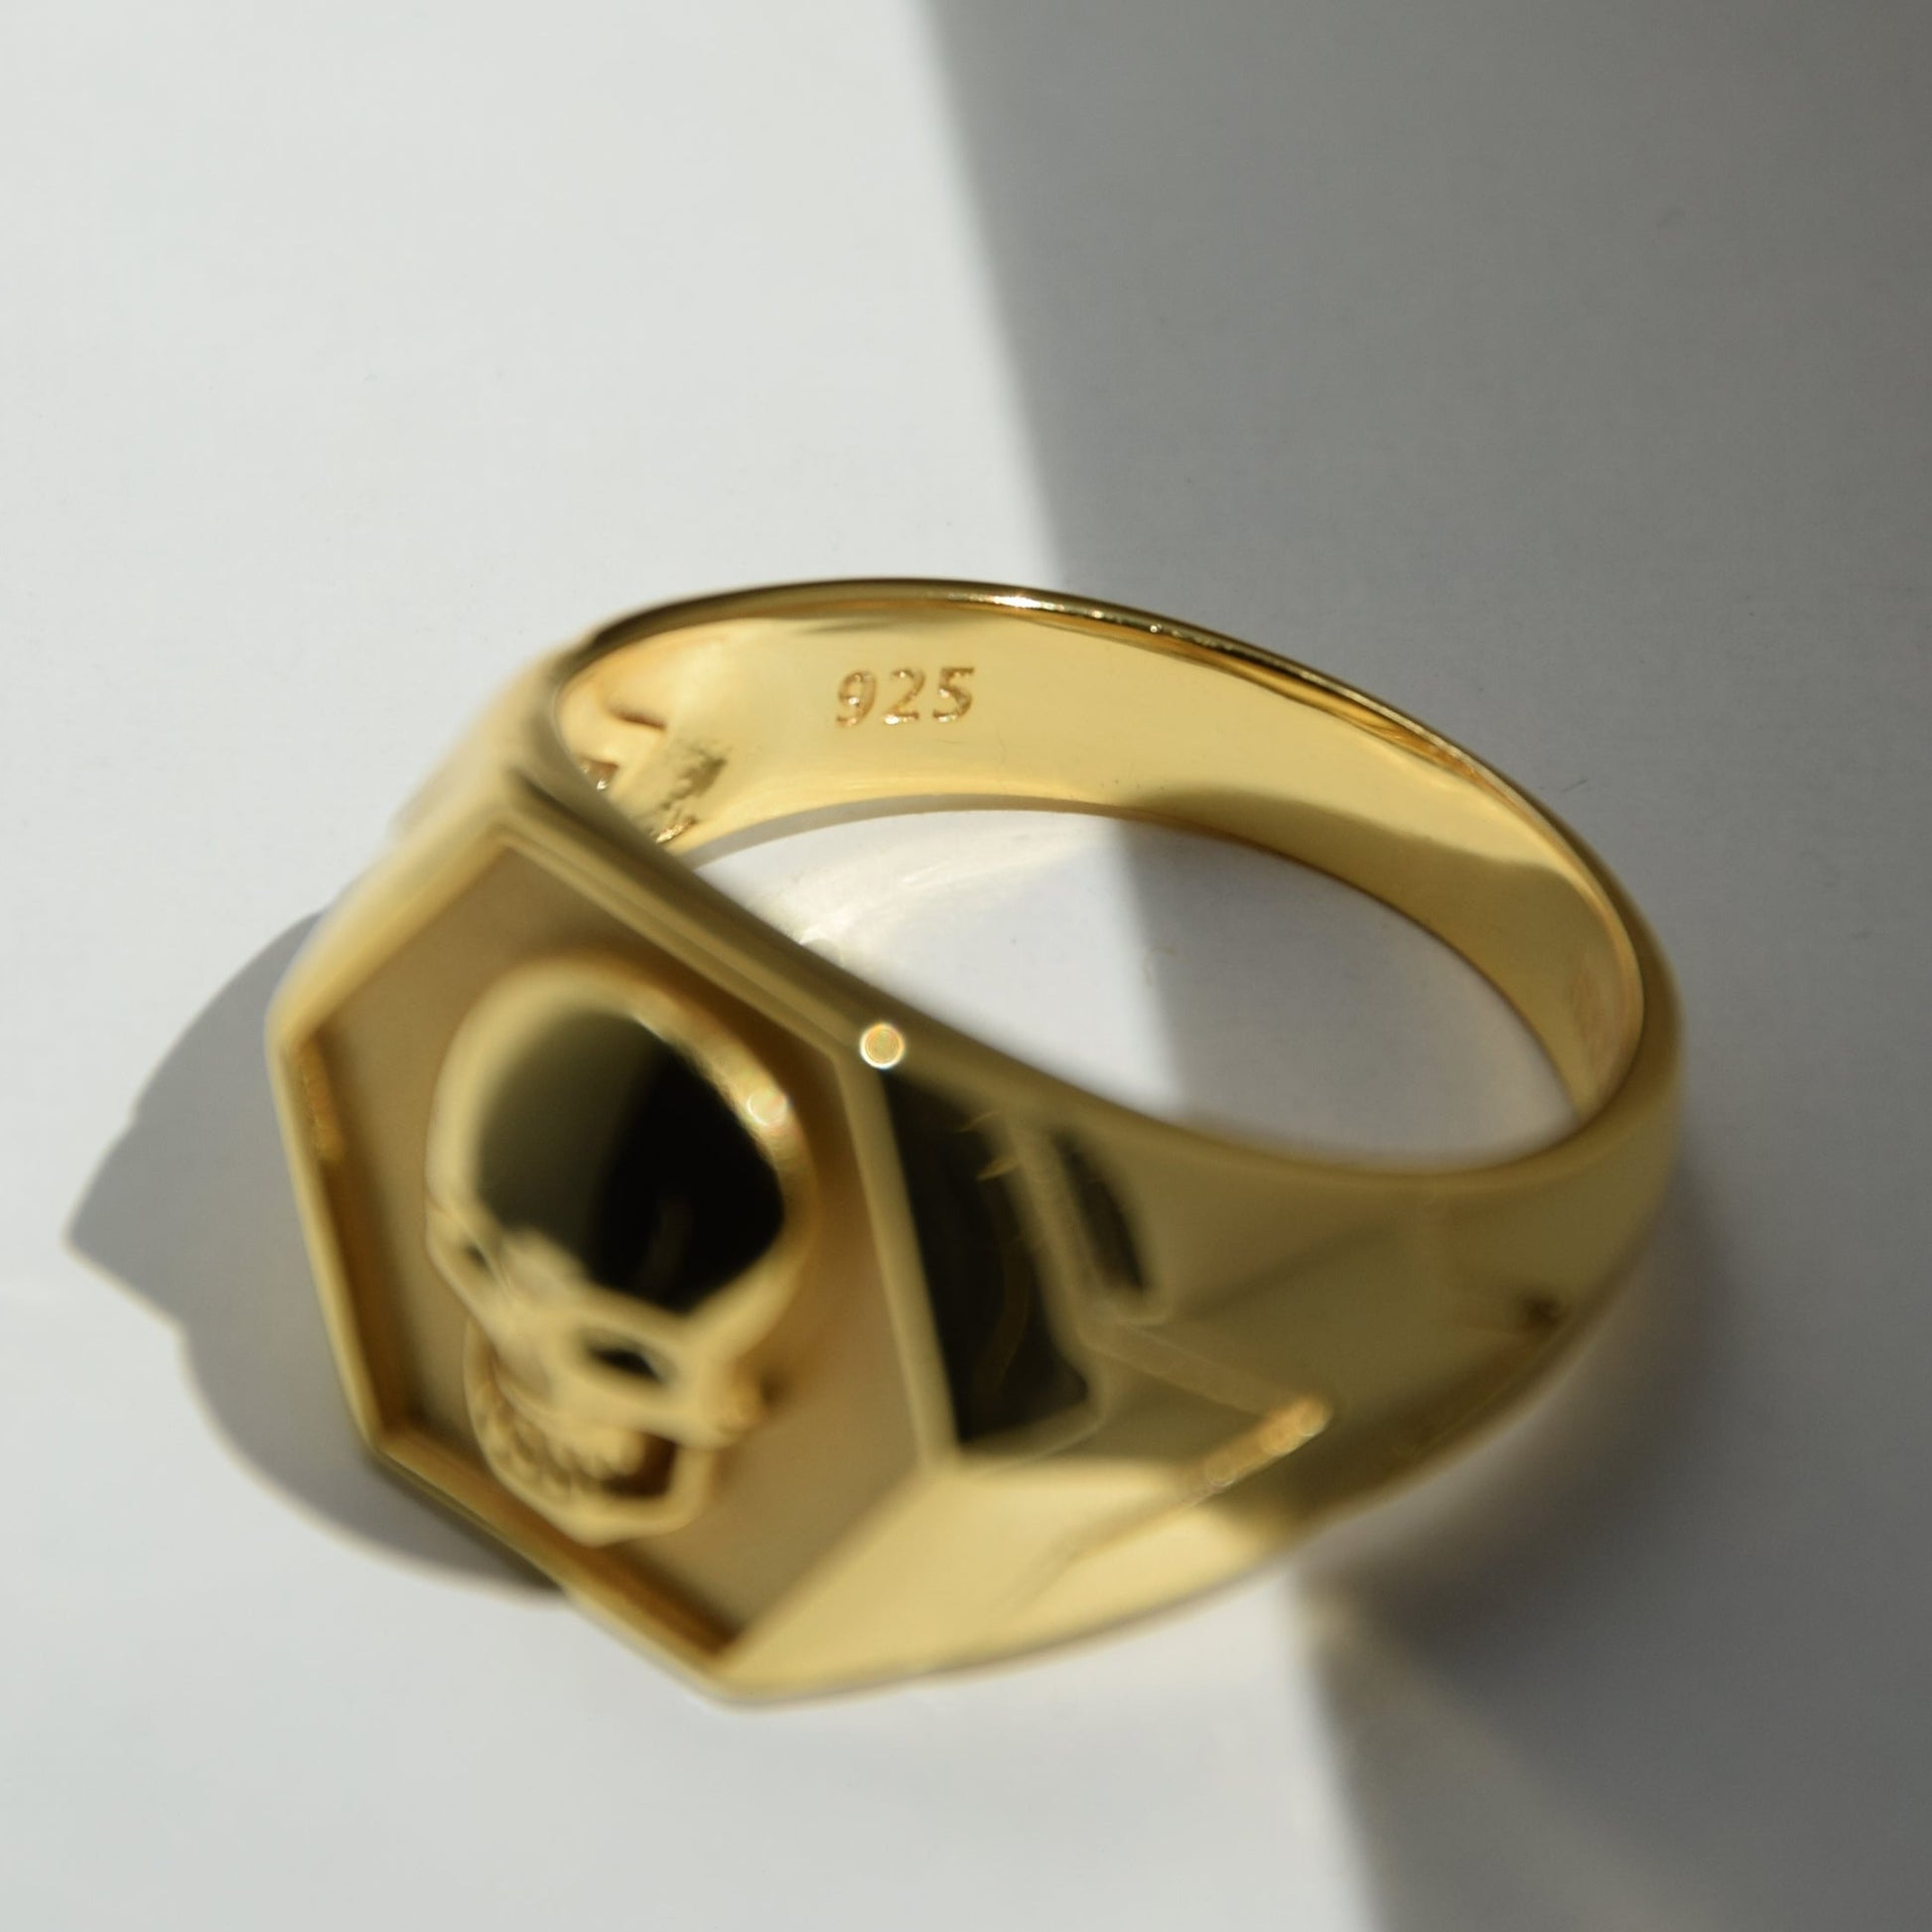 Ring SKULL BAD BOY, 925 silver, gilded, Skull ring